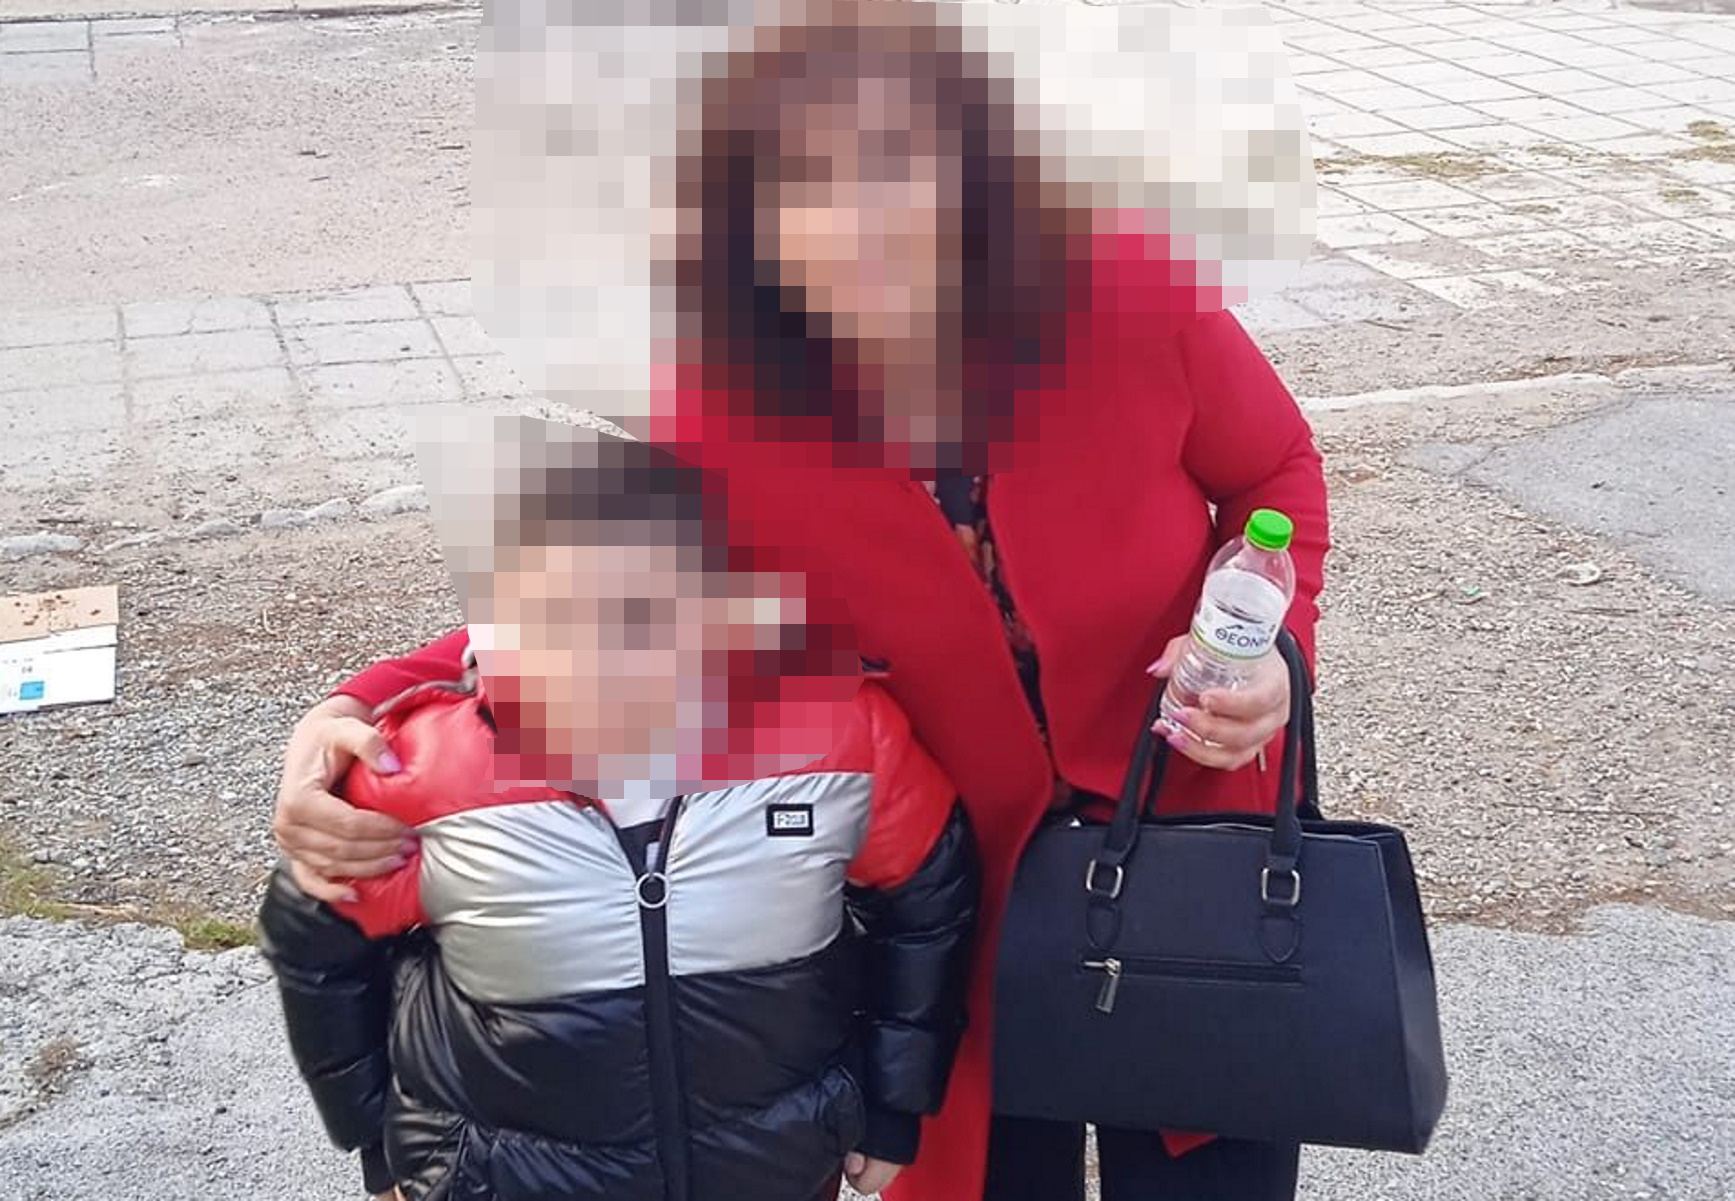 Χαλκιδική: Την σκότωσε μέσα στο παιδικό δωμάτιο – Ο γιος τους περιφερόταν στο σπίτι που ήταν γεμάτο αίματα